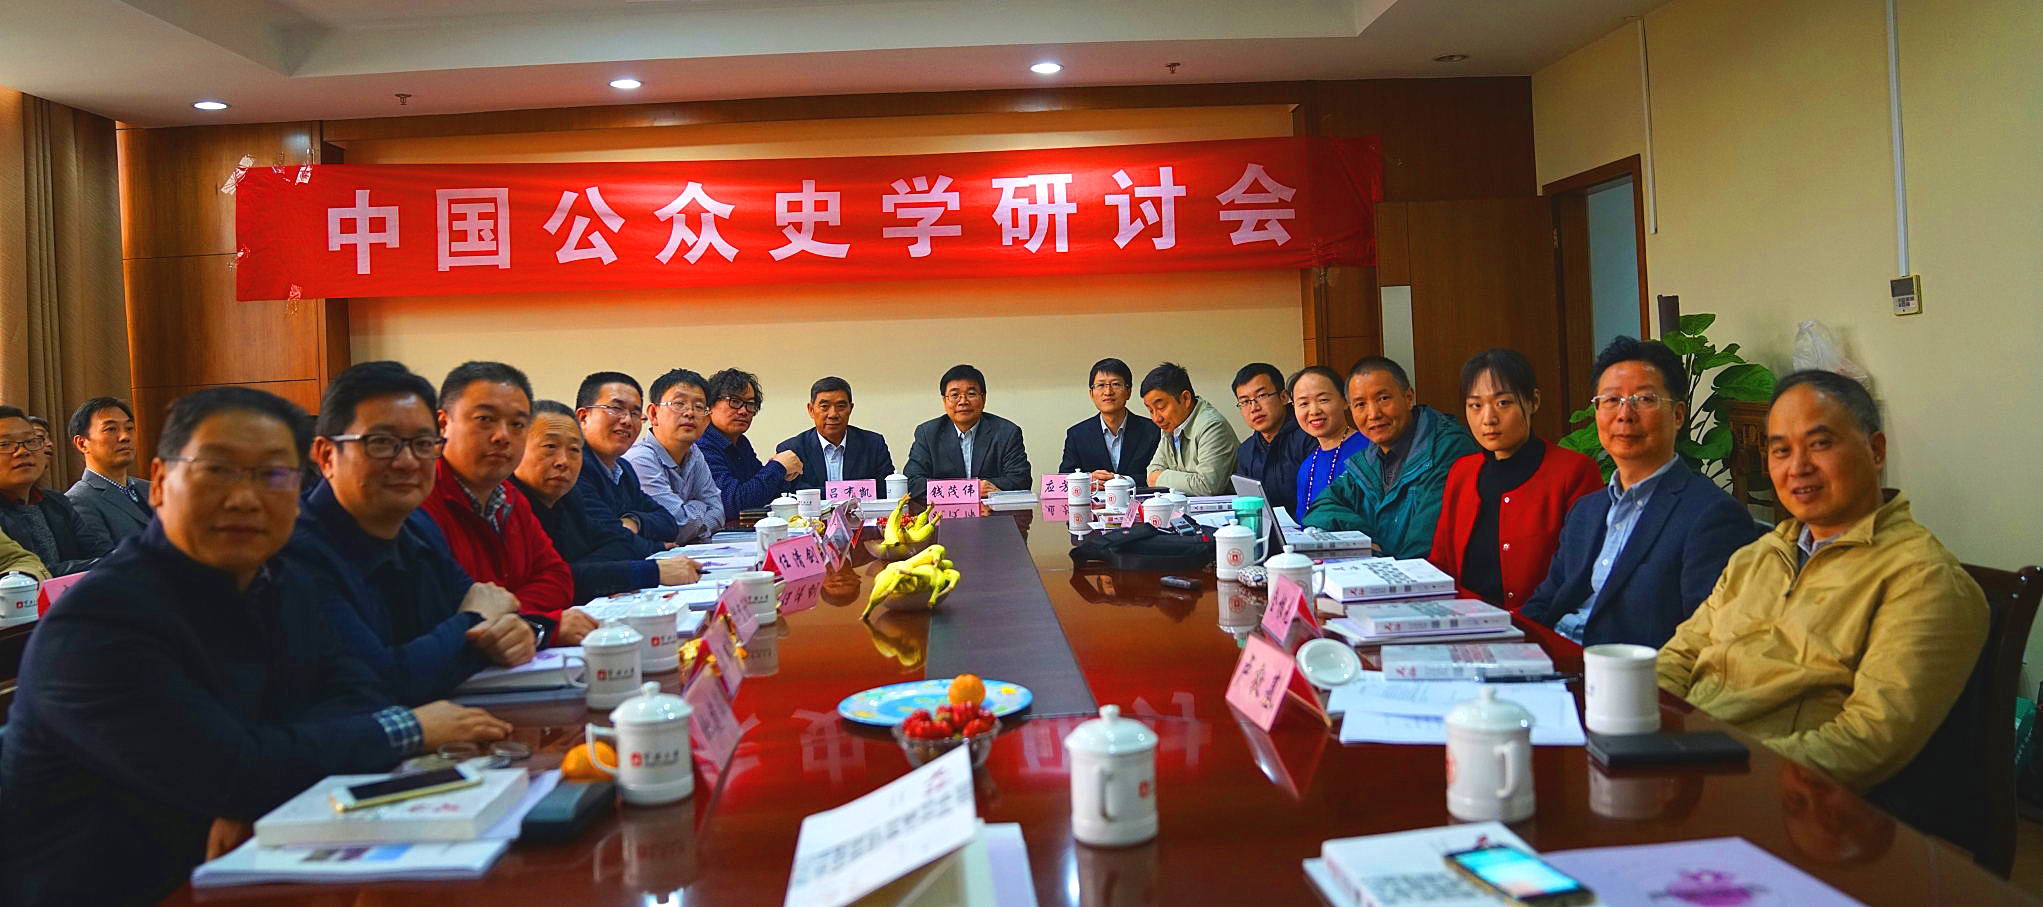 吕有凯应邀出席中国公众史学研讨会在宁波大学召开